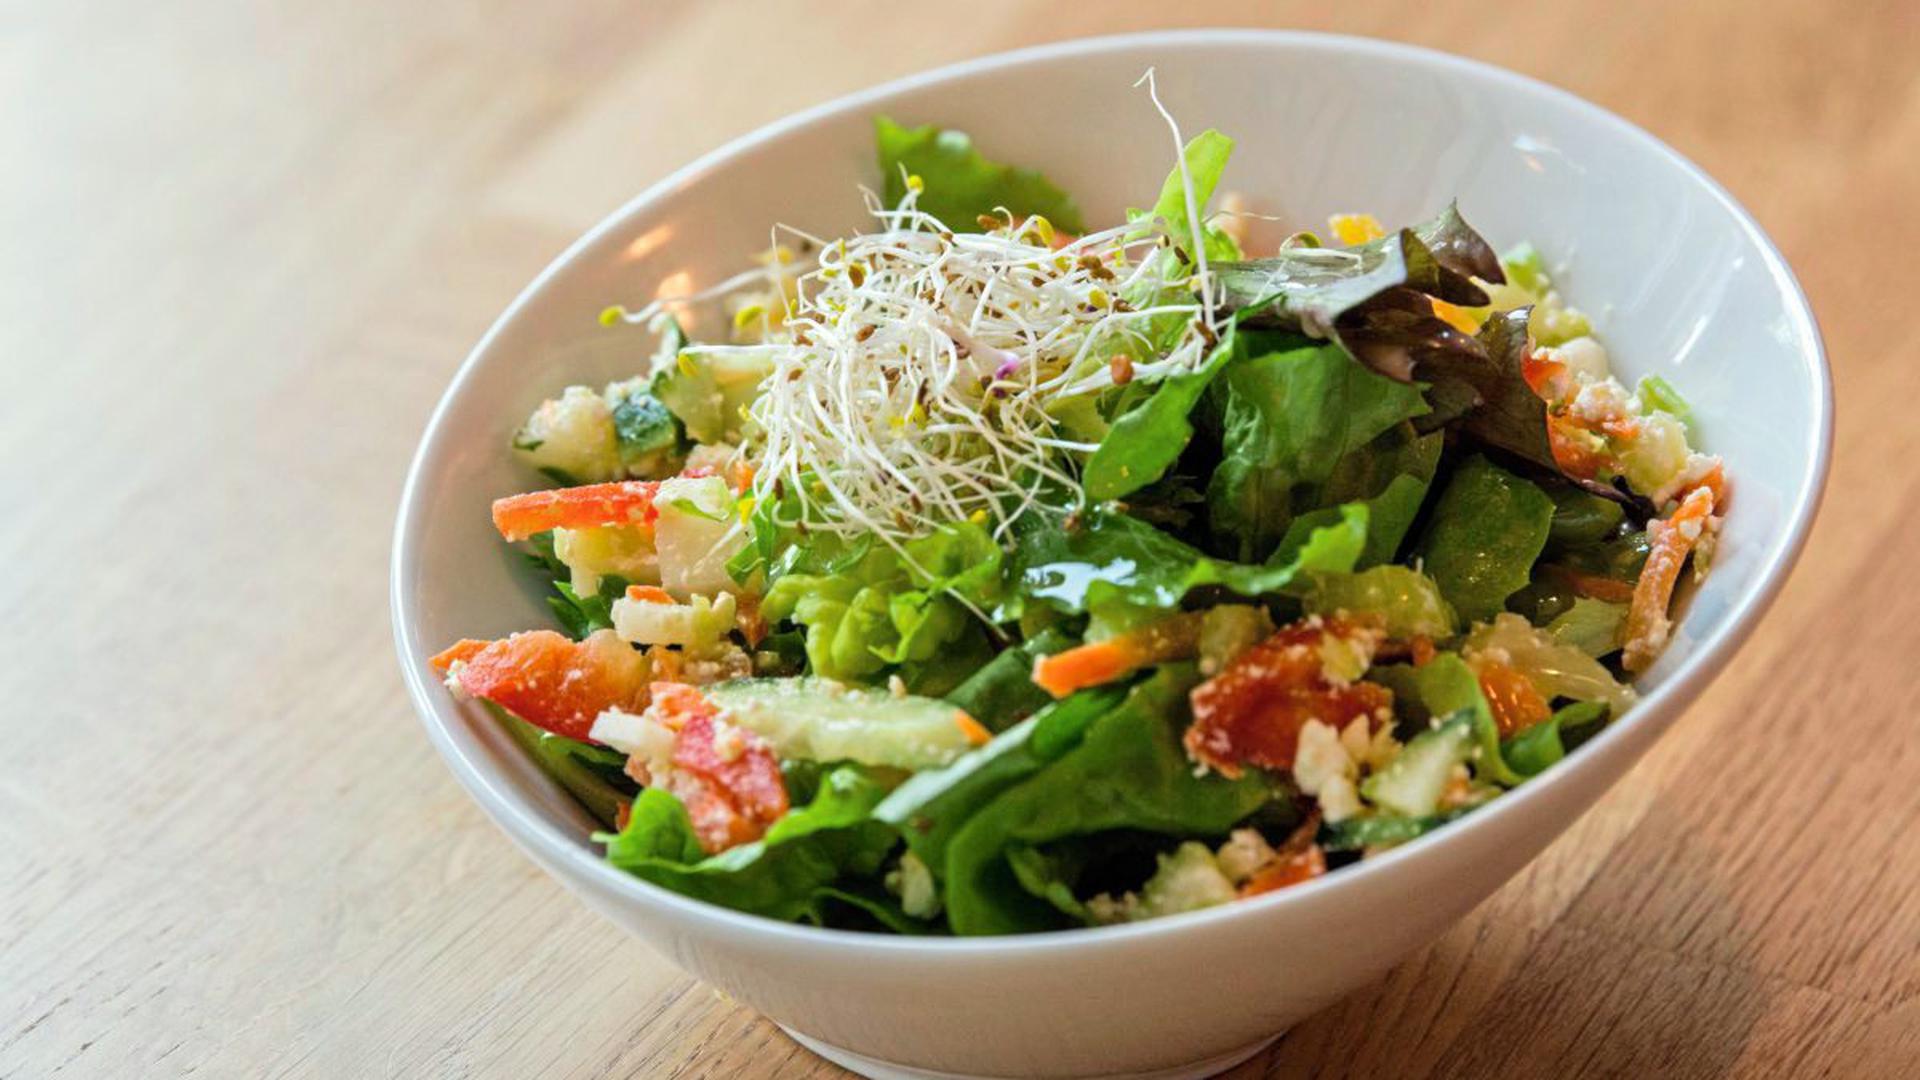 Die gesunde Alternative im Vergleich zu vielen fetthaltigen Kantinenessen: Salat.